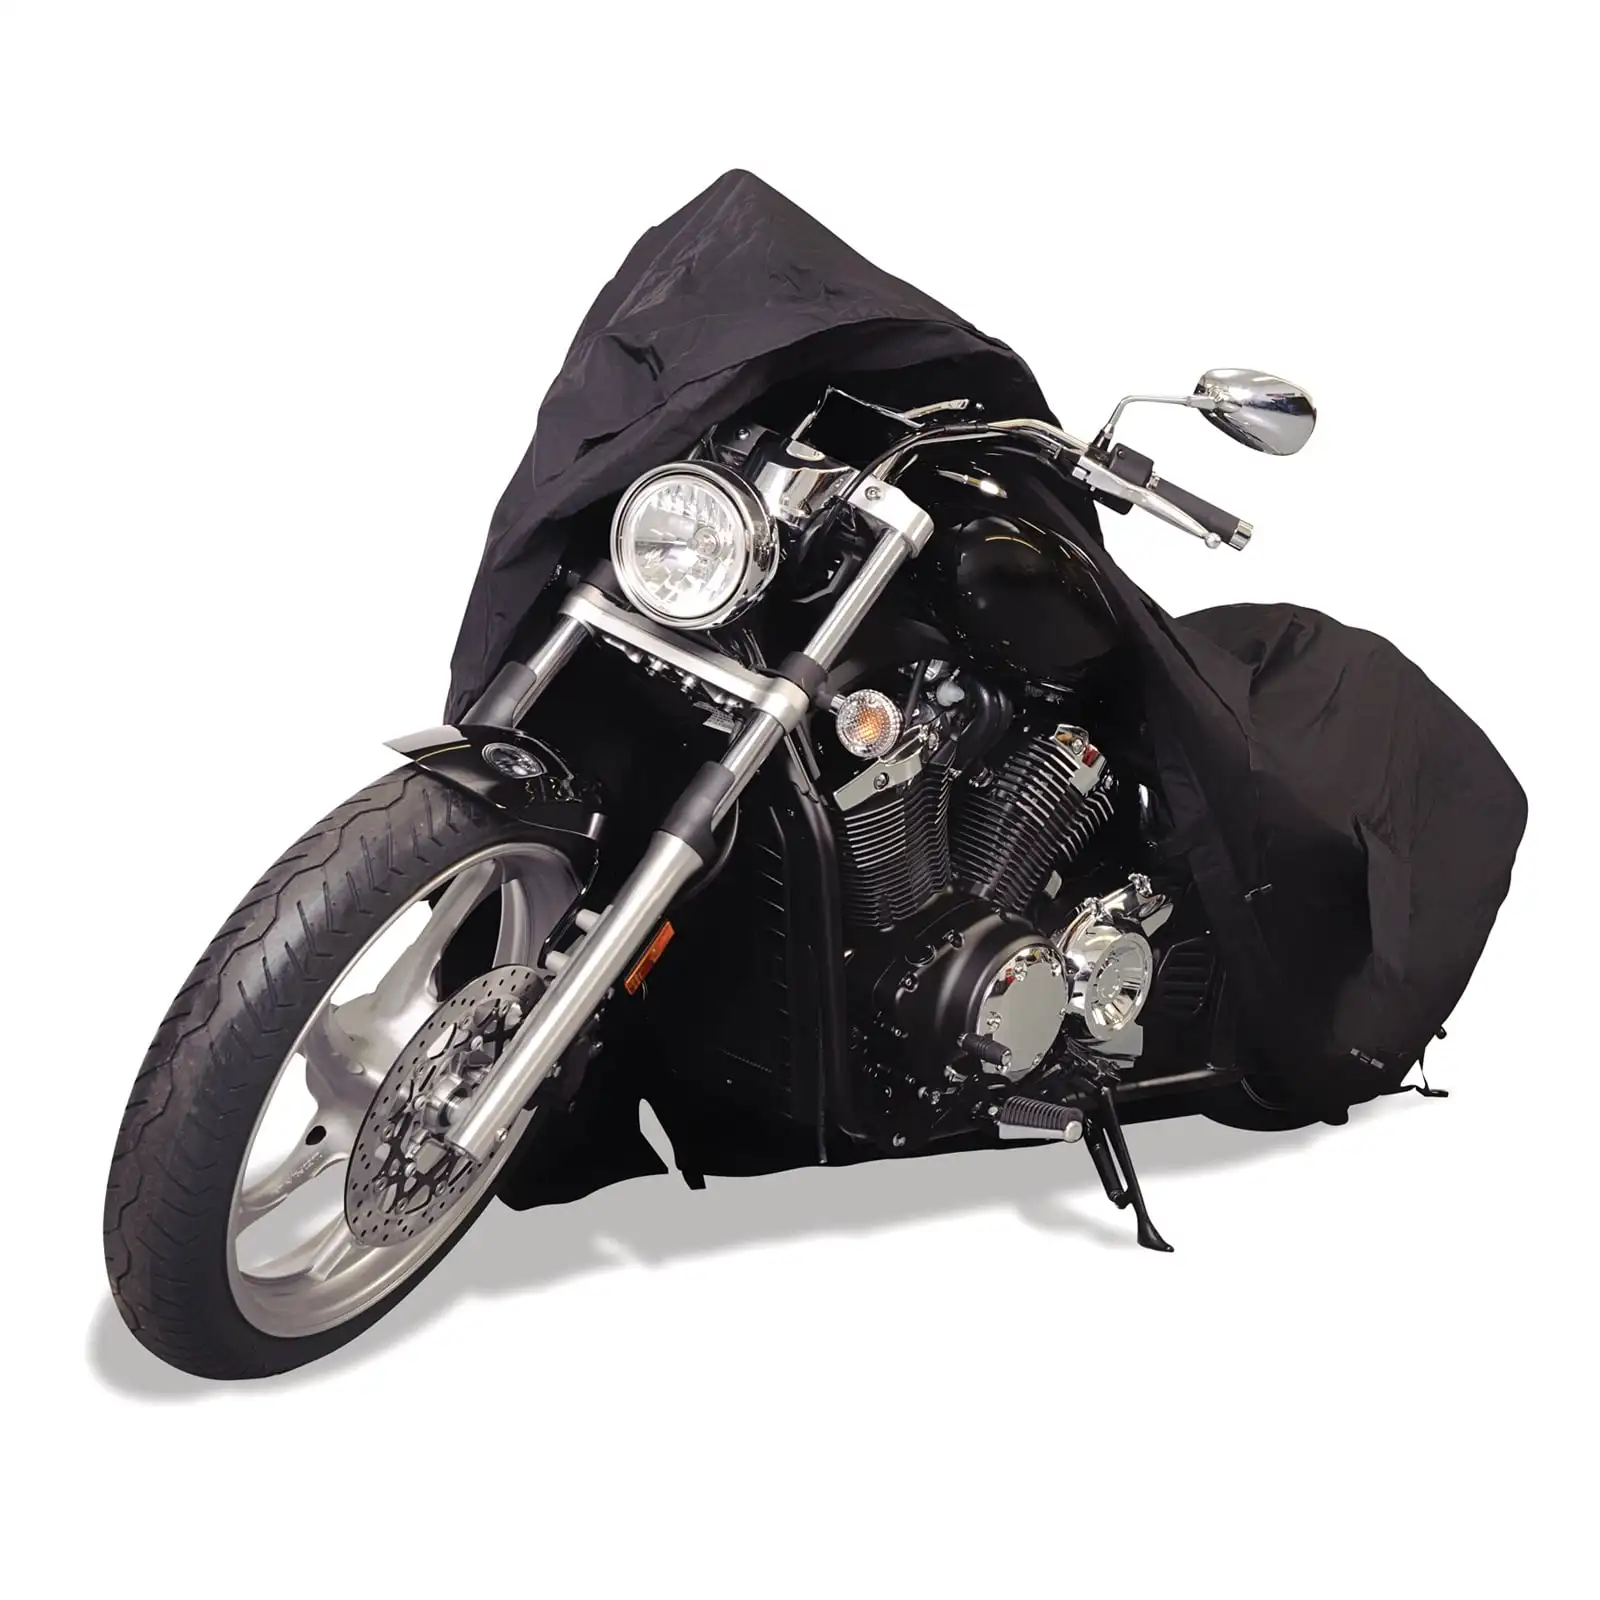 

Водонепроницаемая мотоциклетная крышка Budge Industries для экстремальных условий, несколько размеров, черный